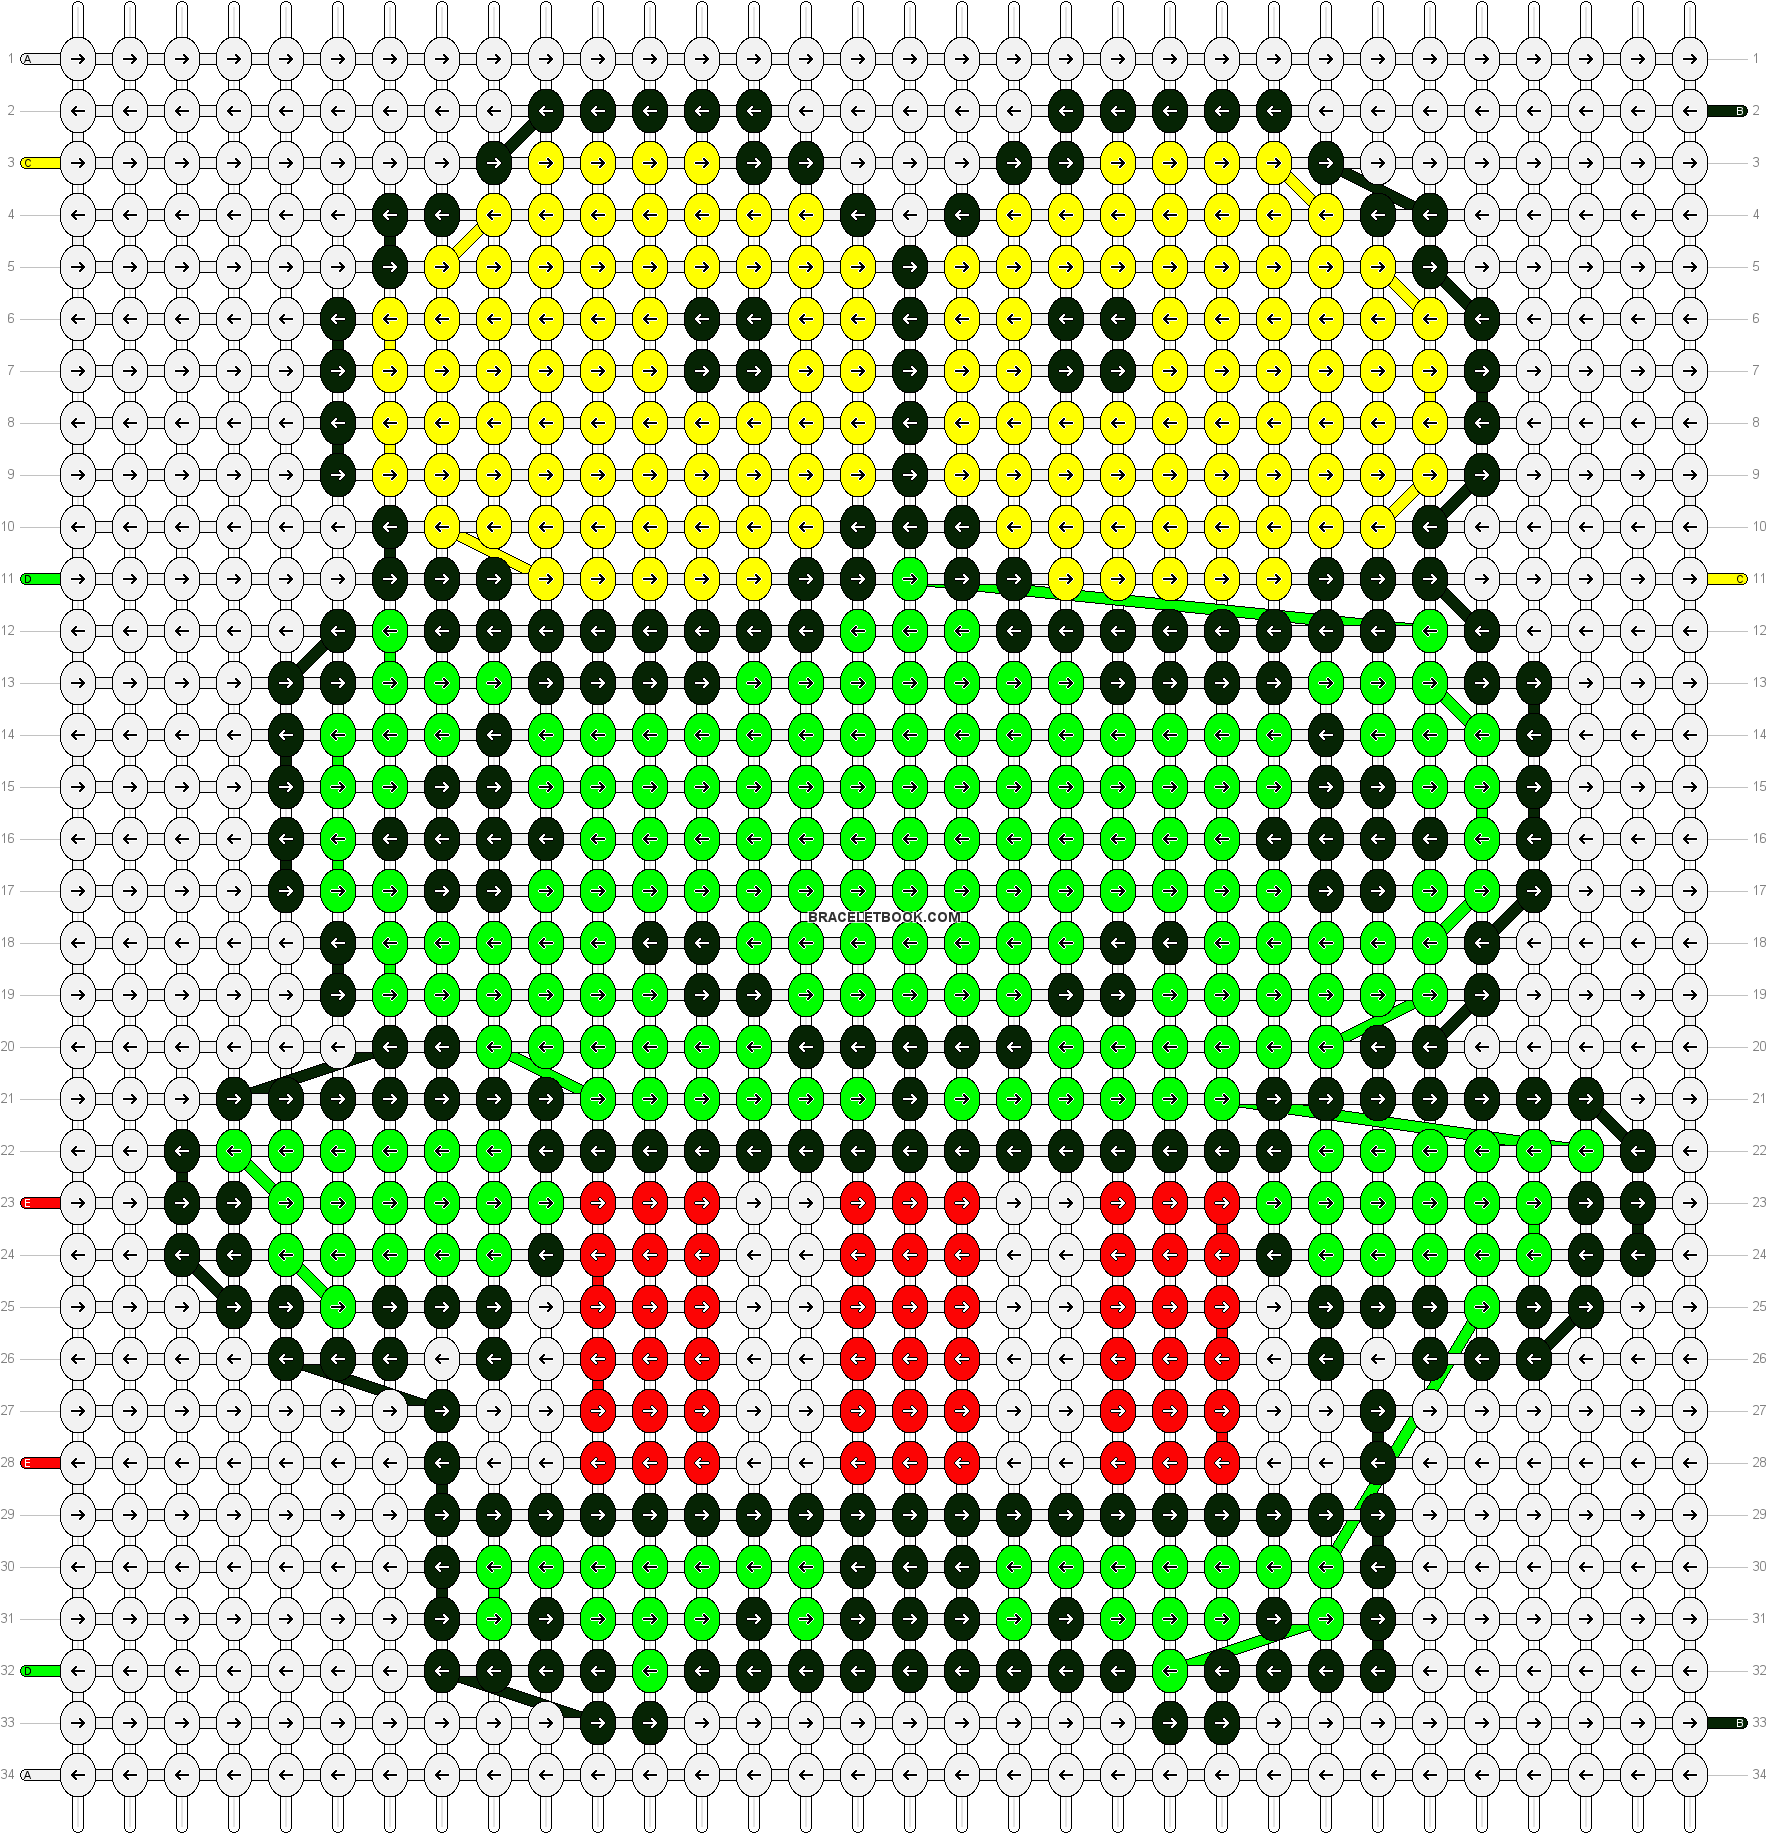 Keroppi Pixel Art Creation PNG image